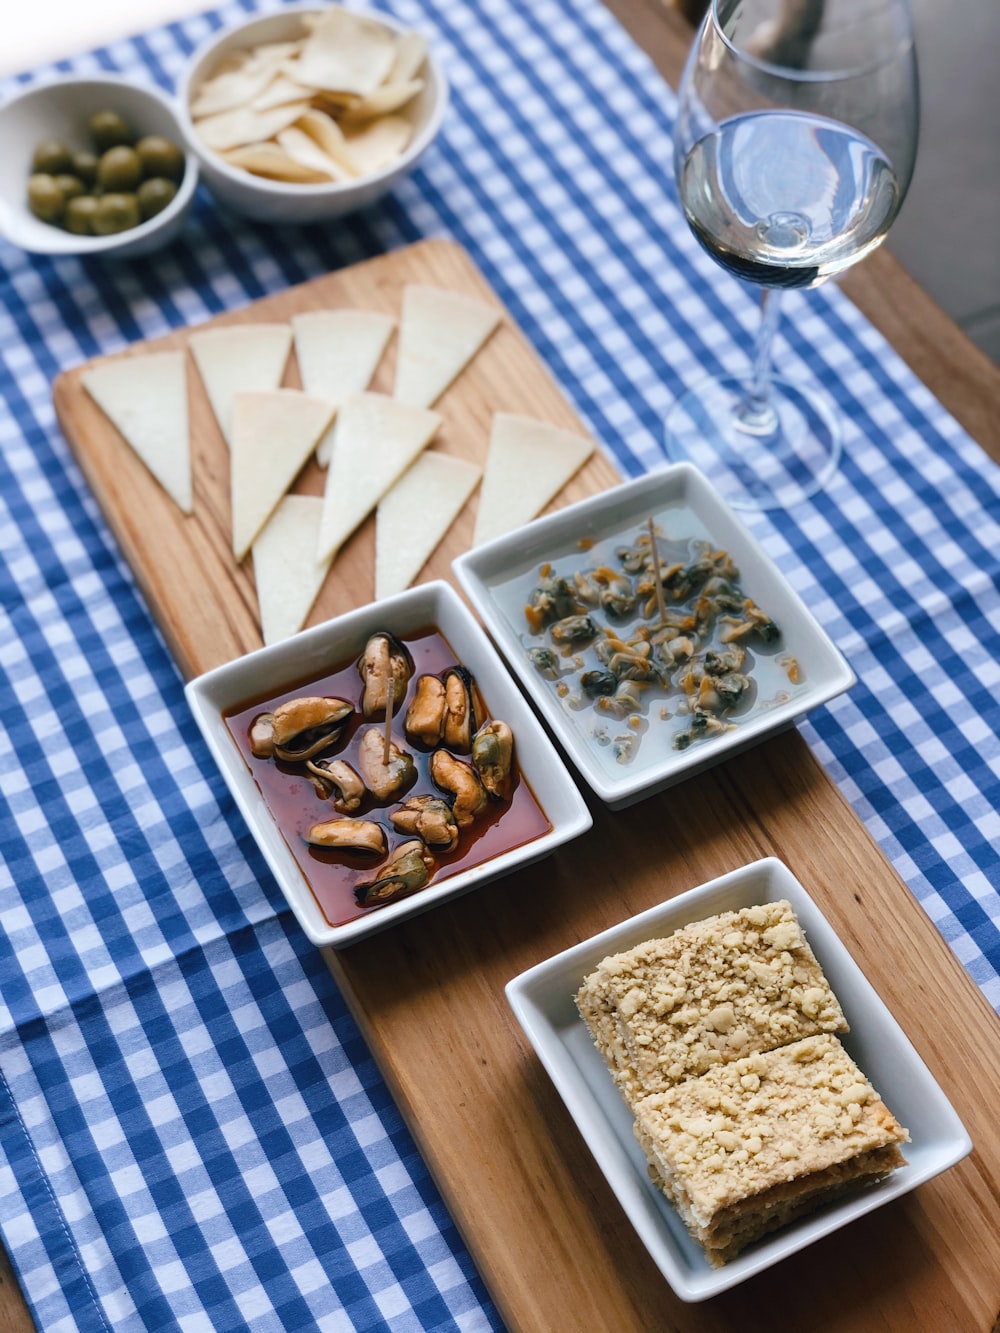 青と白の市松模様のテーブルクロスに食べ物が入った白いセラミックボウル